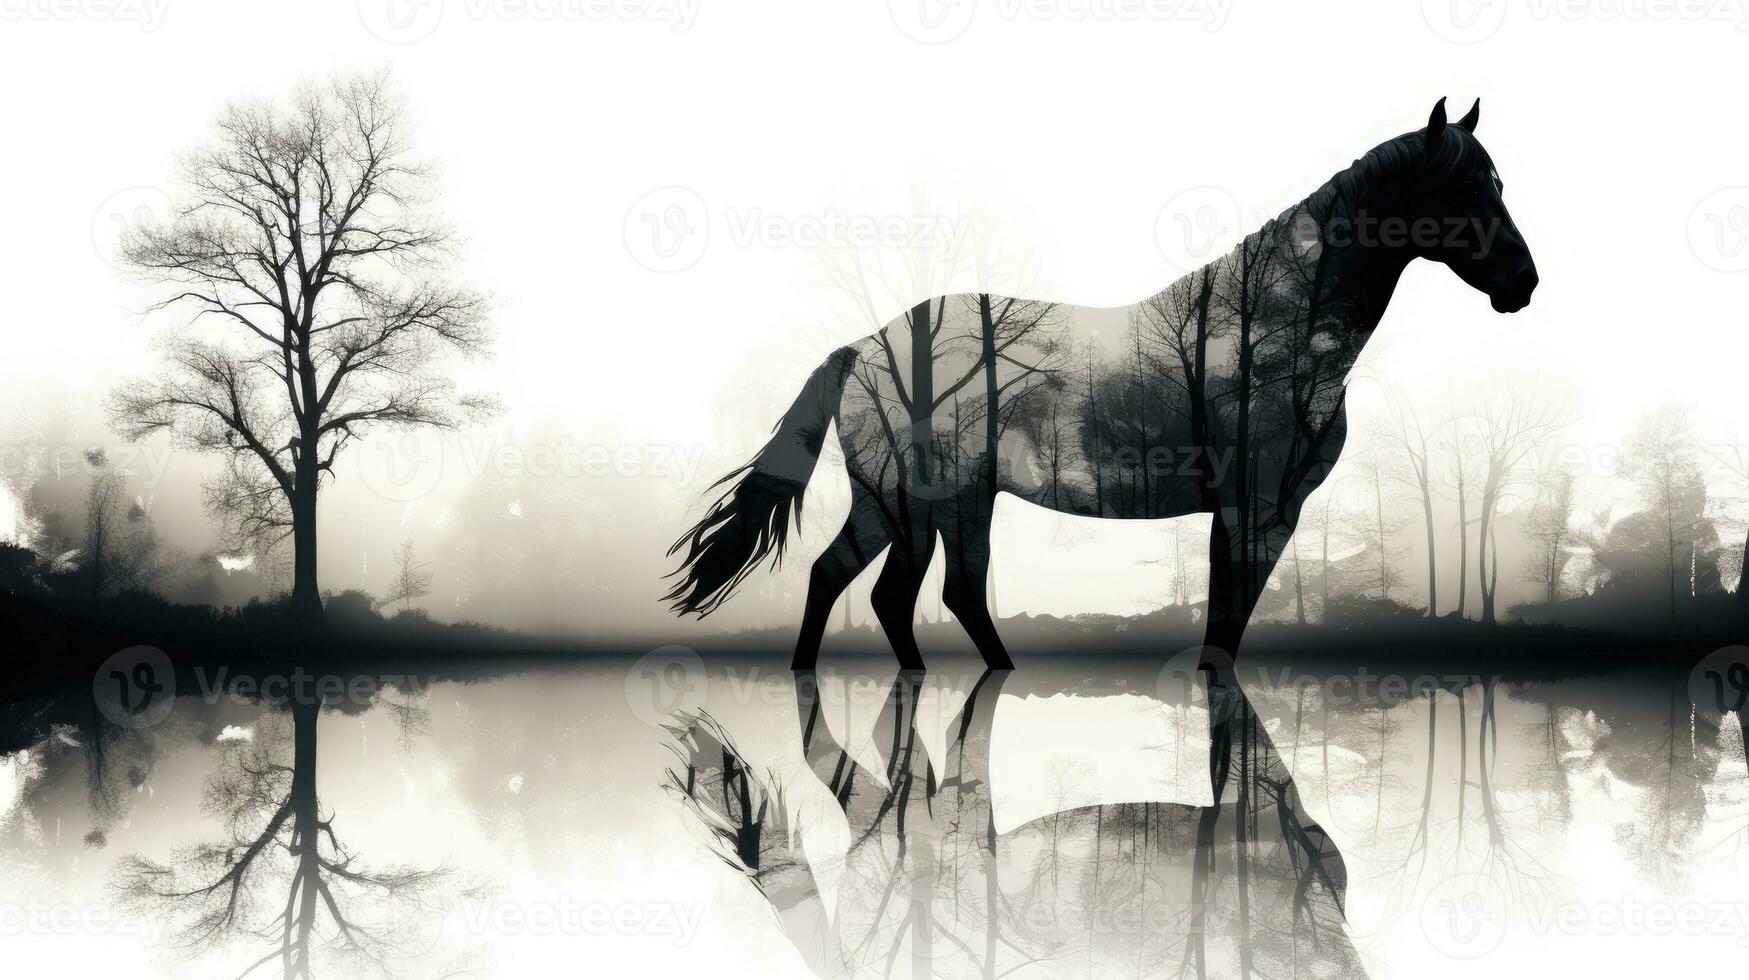 negro y blanco doble exposición fusionando caballo y arboles a escaparate su conexión en naturaleza foto